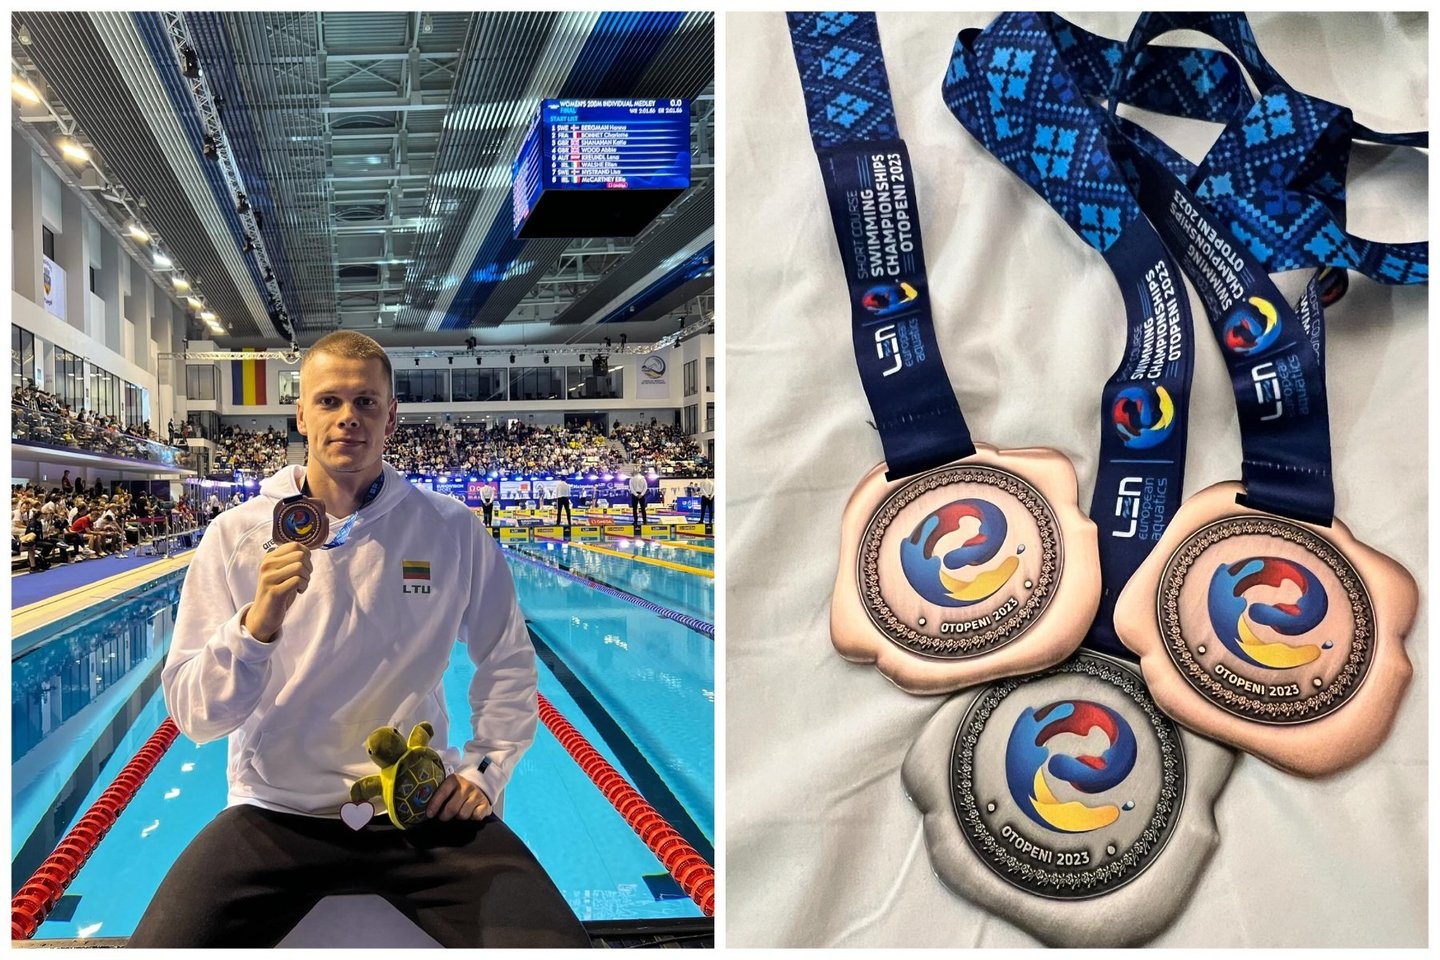  Panevėžietis Europos plaukimo čempionate susižėrė tris medalius<br> Dano Rapšio asmeninio archyvo nuotr.